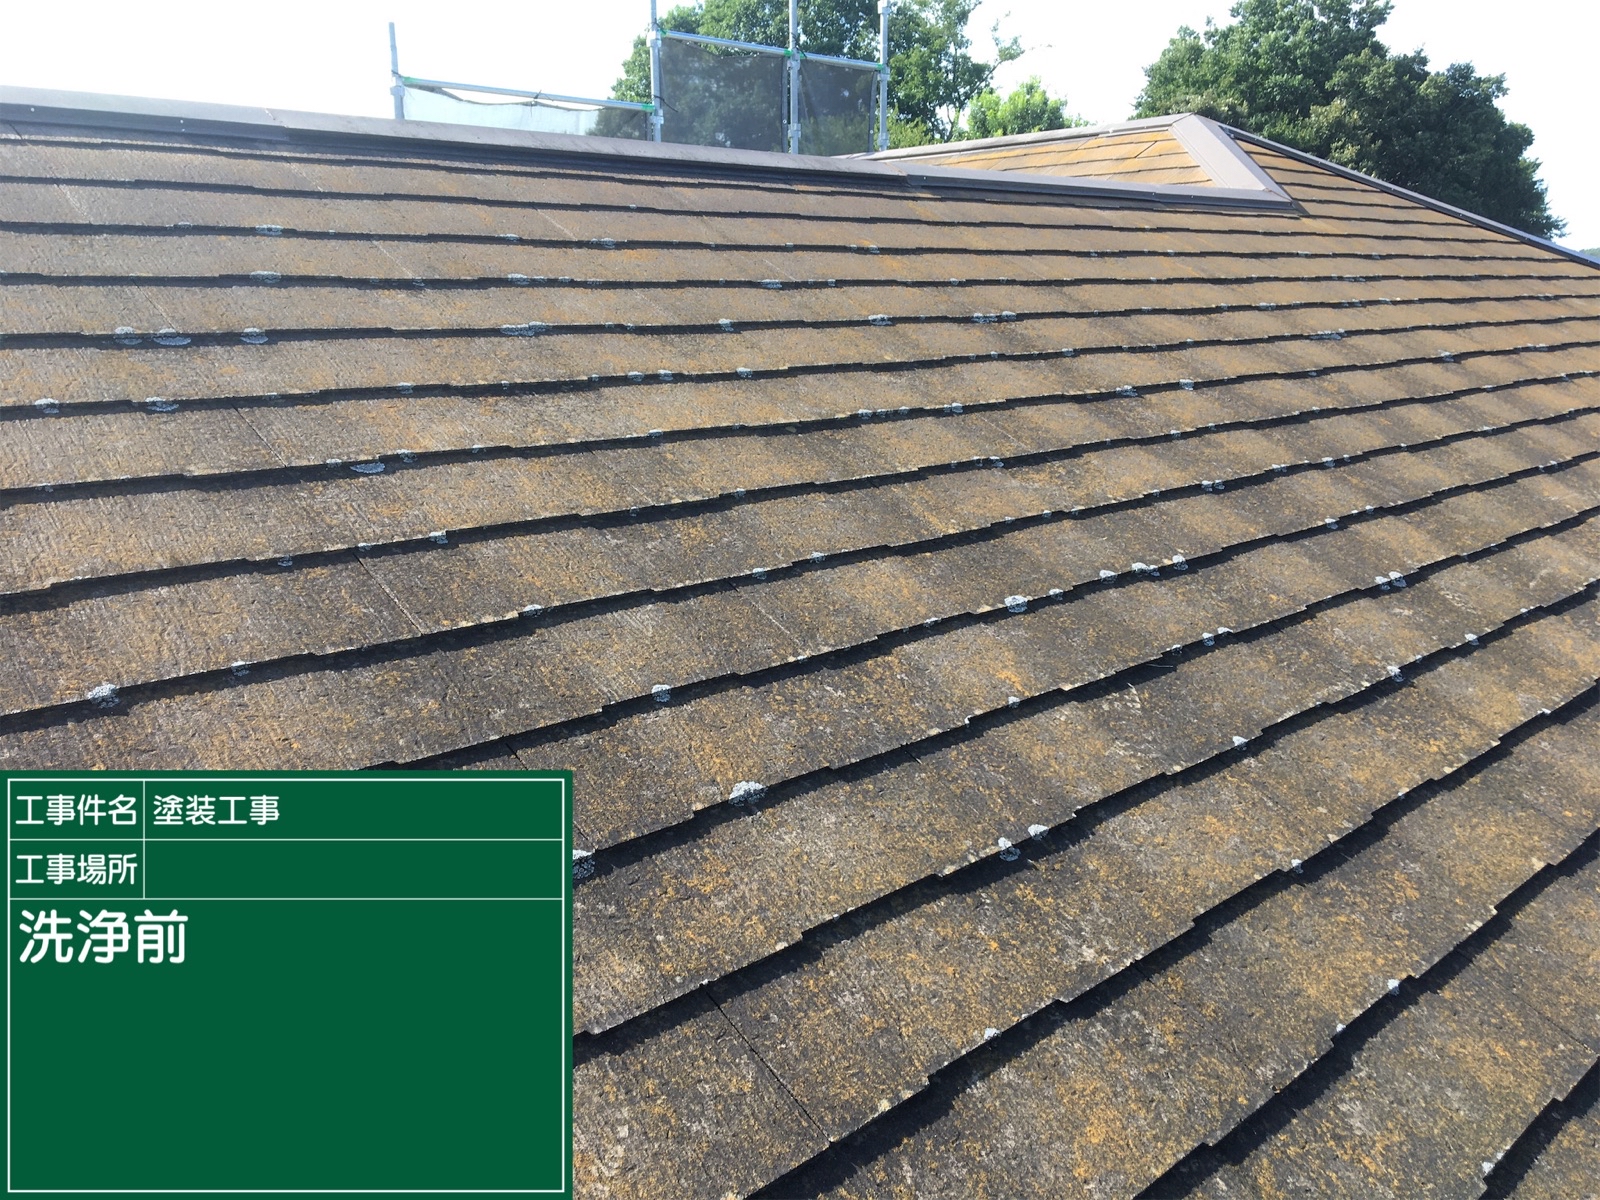 高圧洗浄前屋根(2)300016